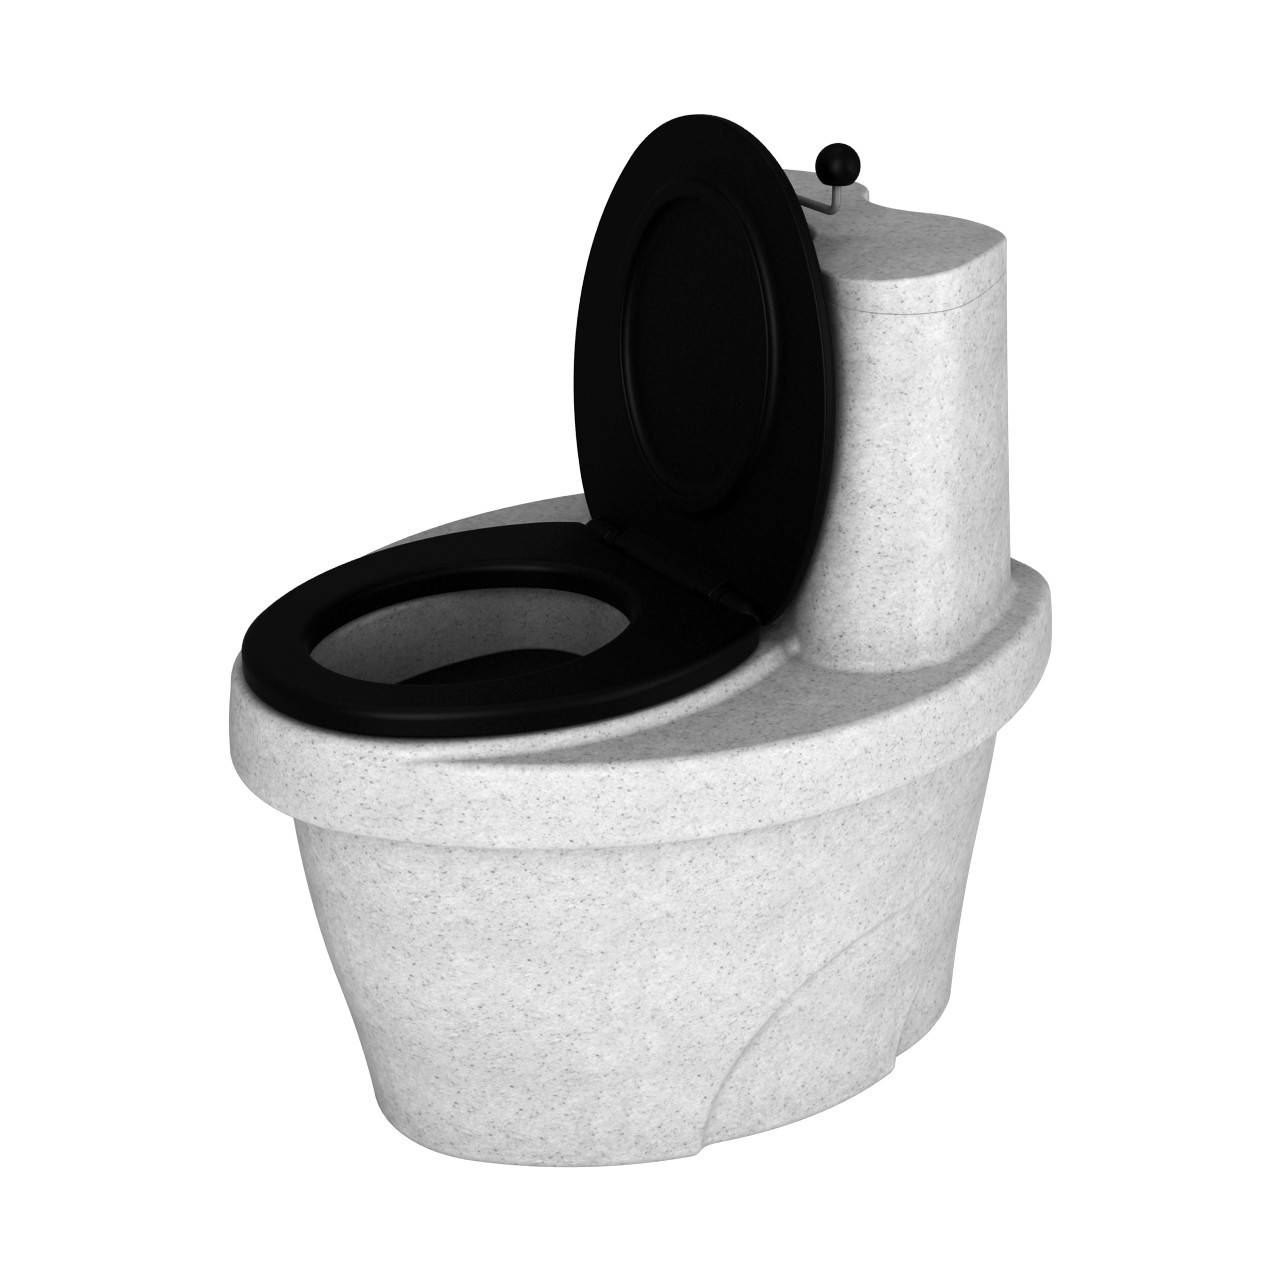 Торфяной туалет для дачи – лучший вариант решения проблем